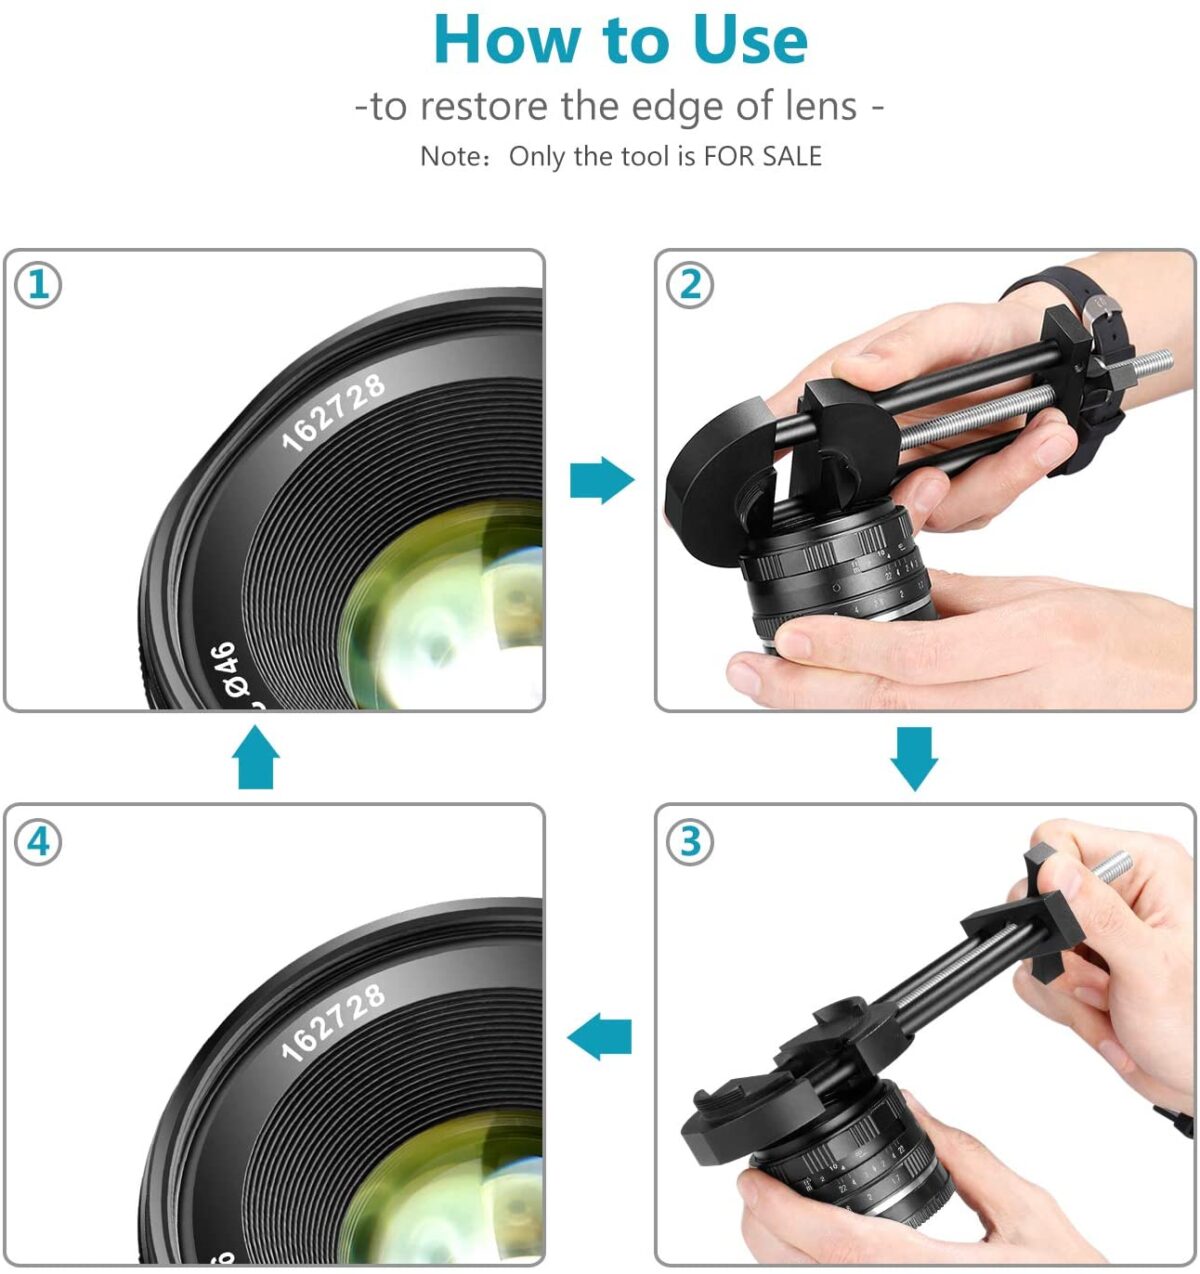 Neewer Camera Lens Vise Repair Tool for Lens and Filter